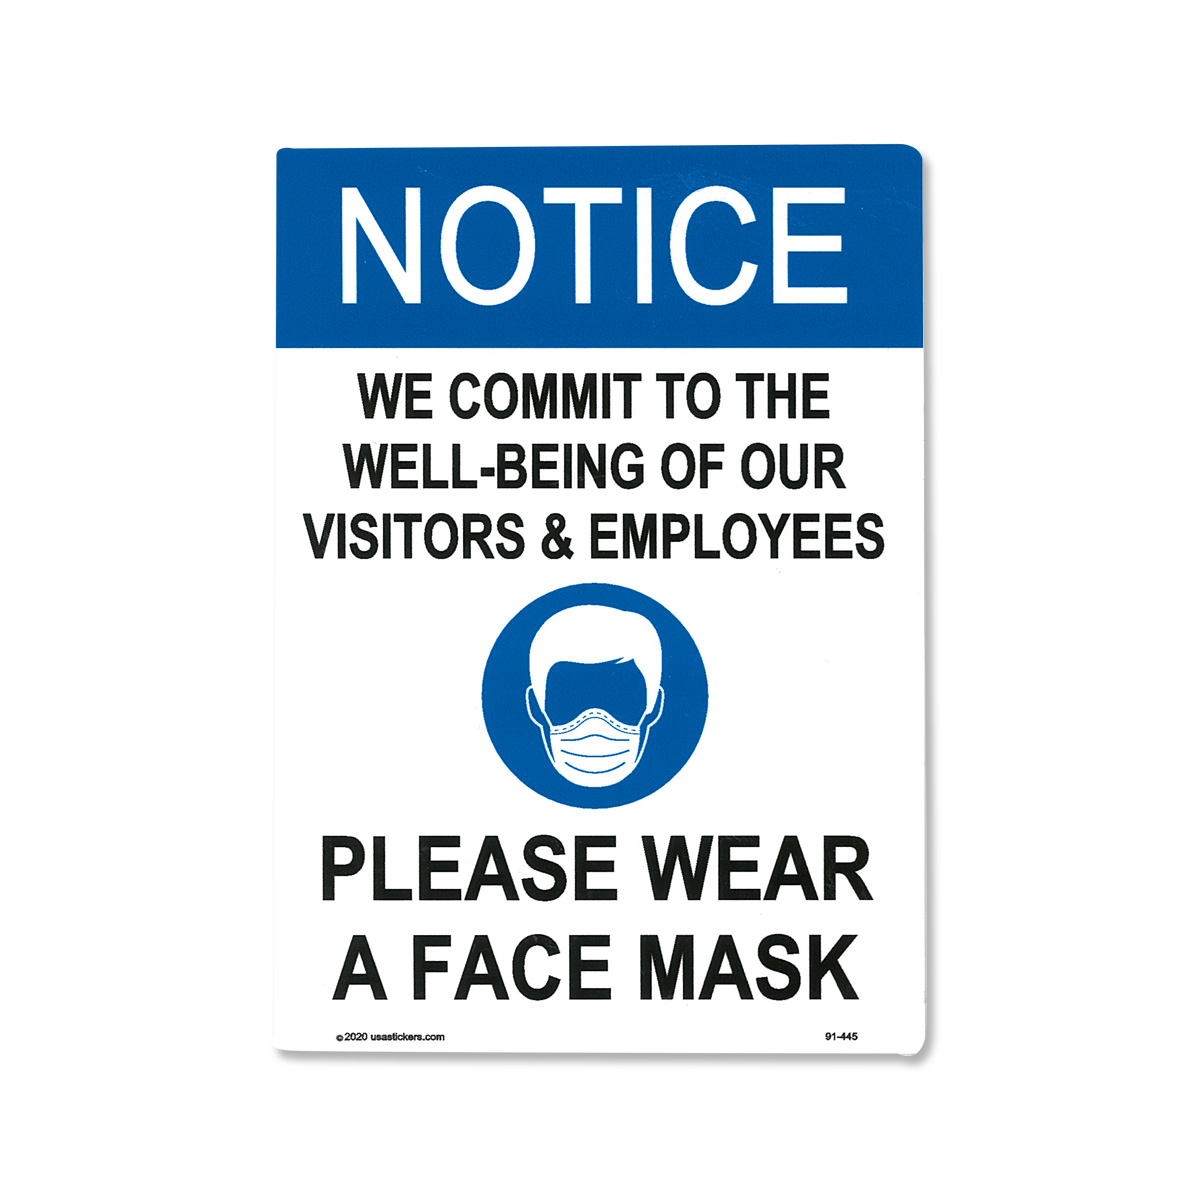 Wear a Mask Sticker